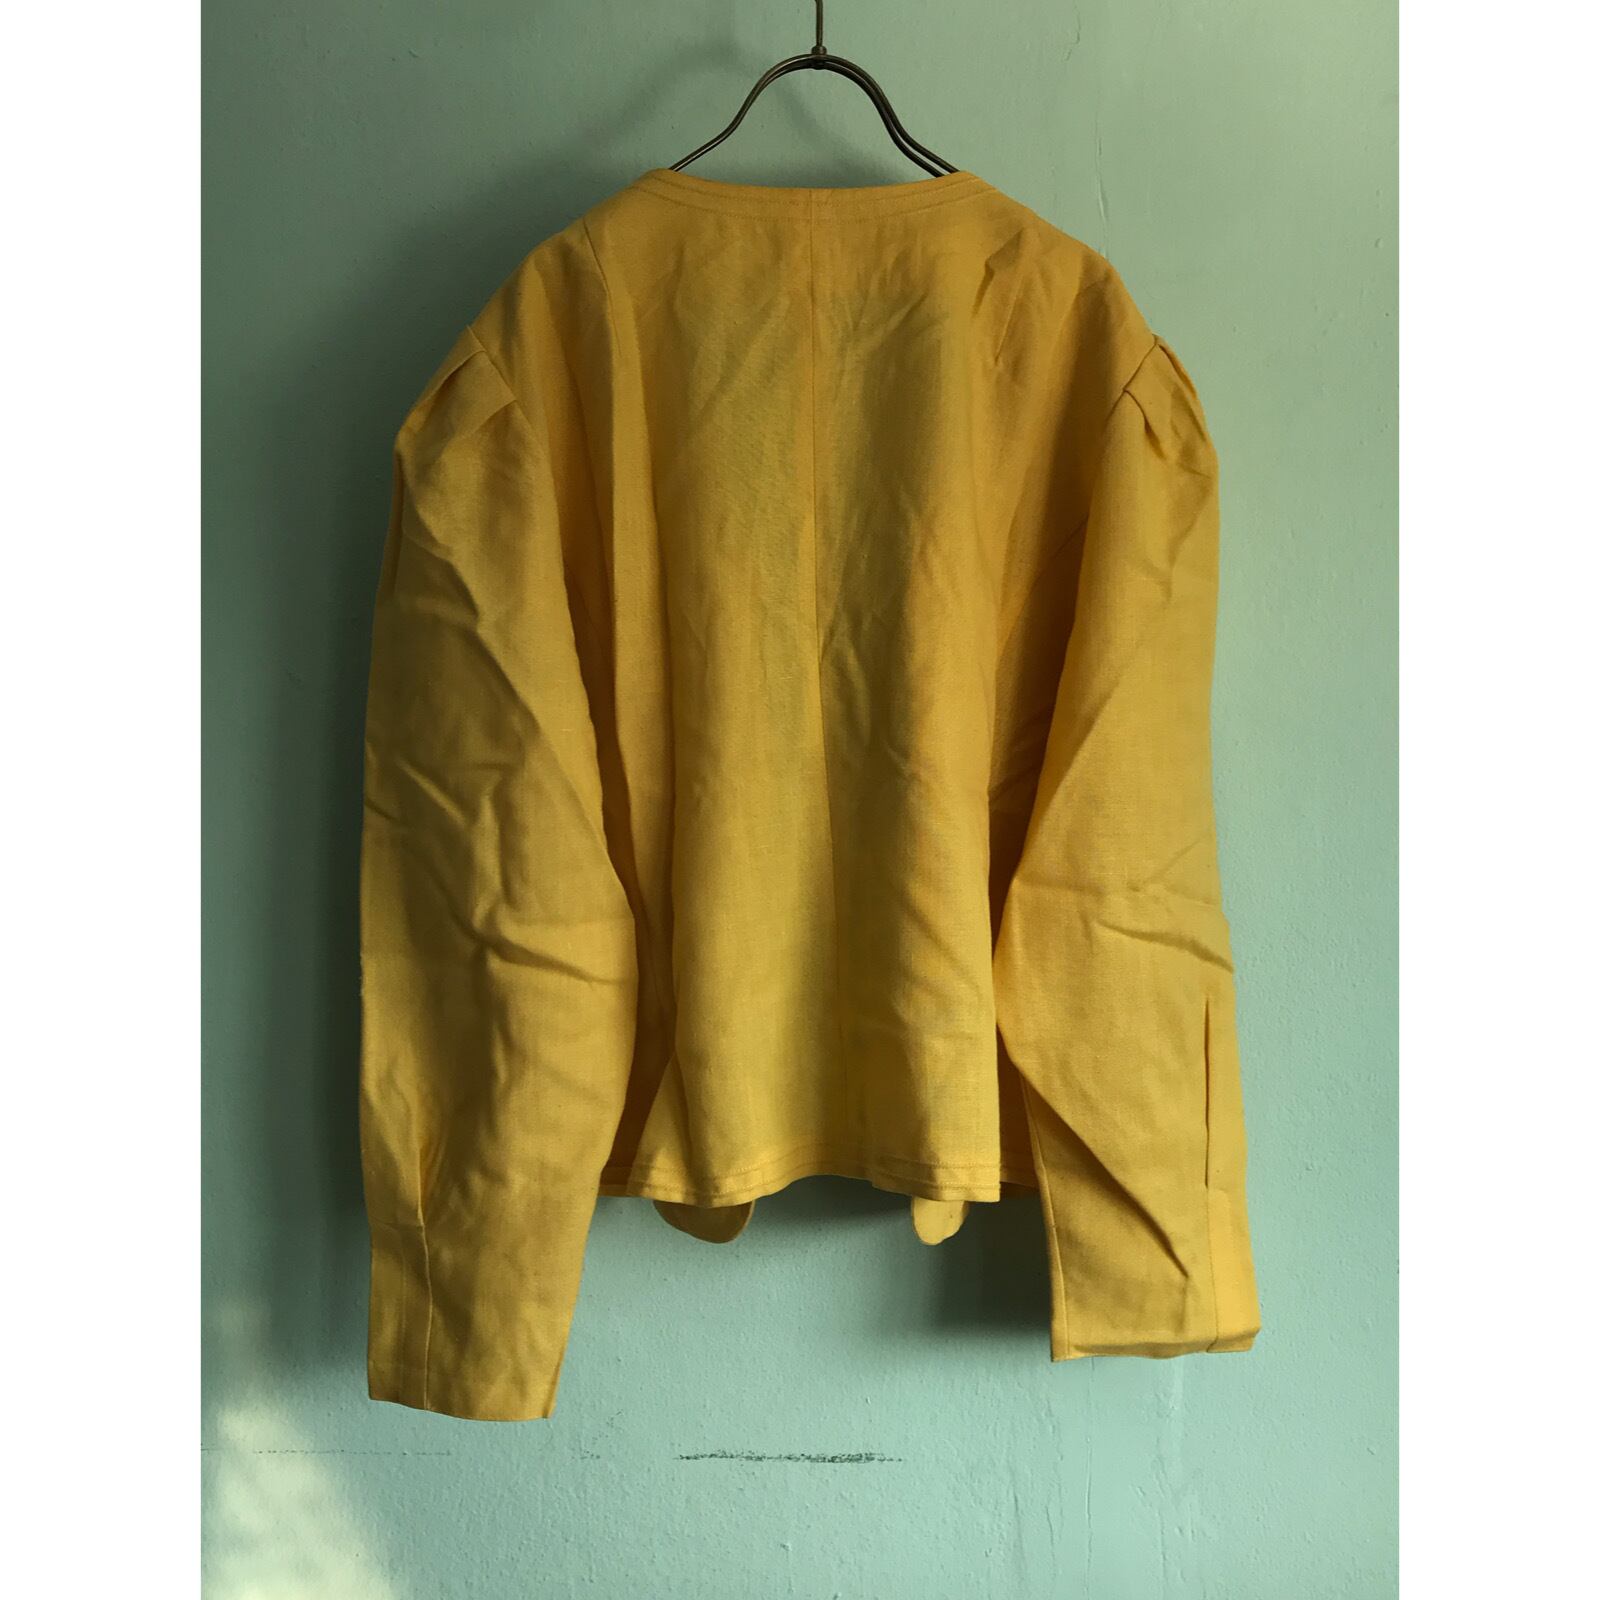 激レア rare West Germany made dead stock yellow cardigan jacket ...